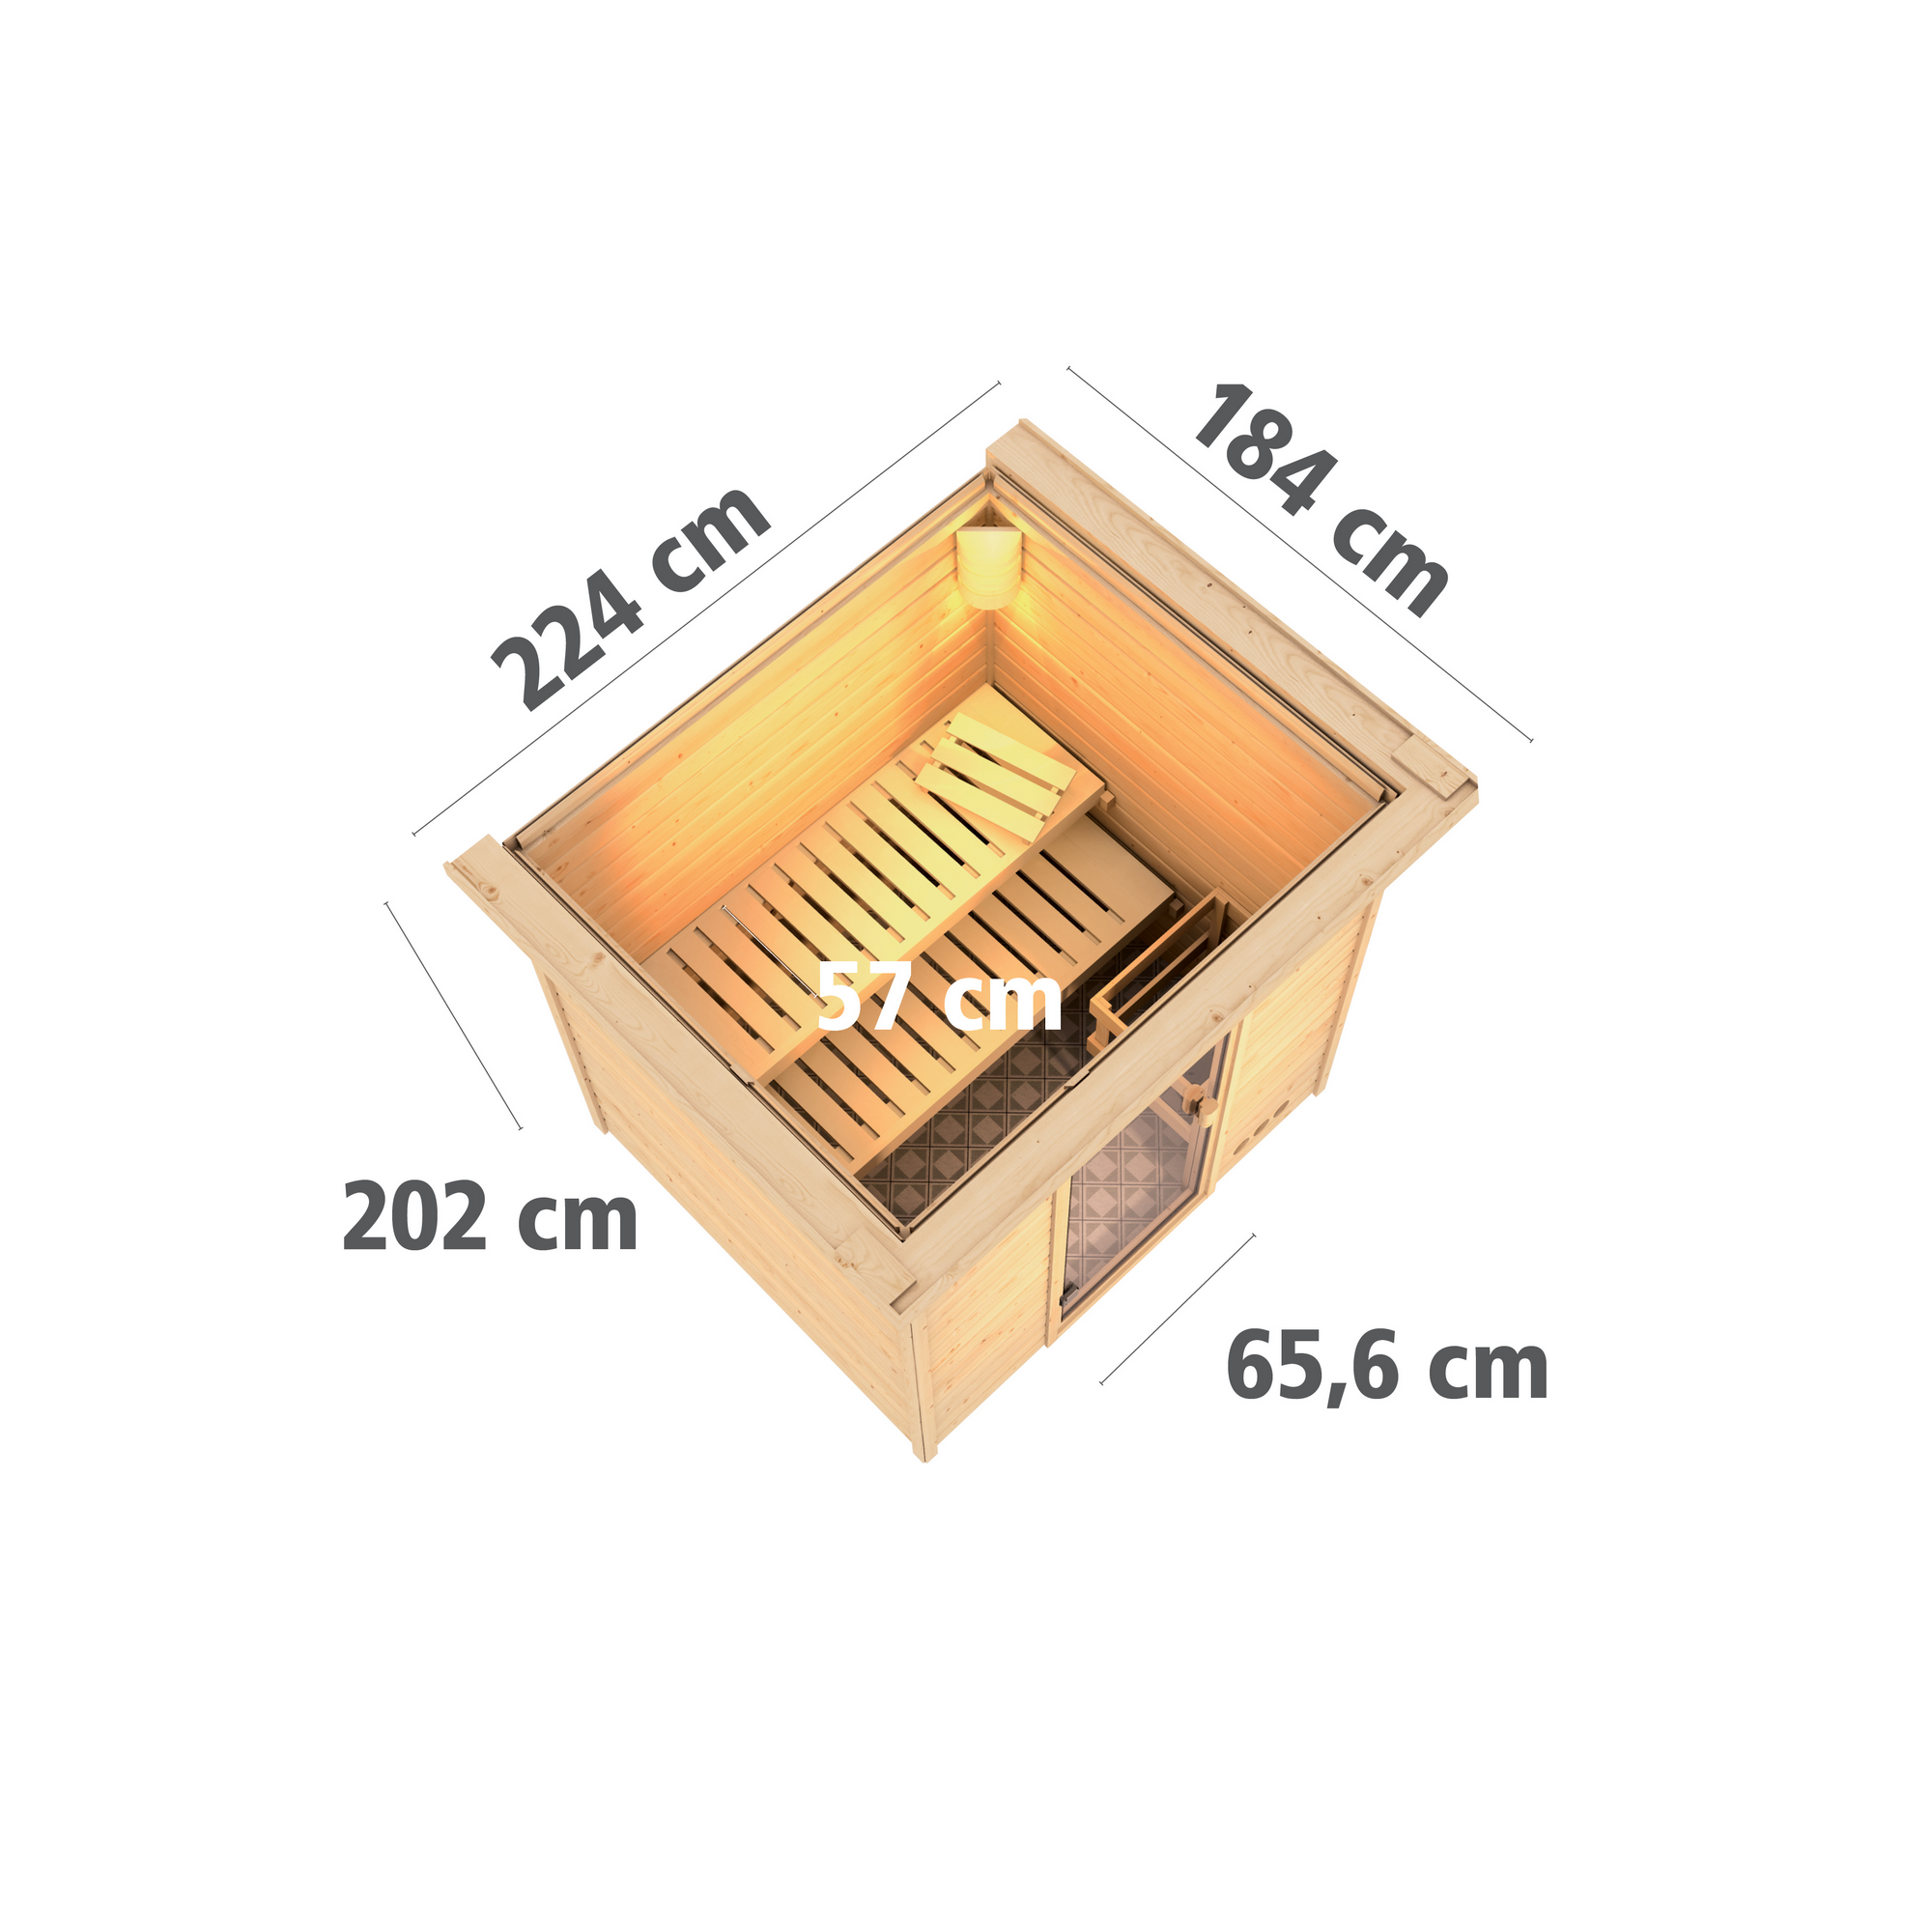 Massivholzsauna 'Jacinta' naturbelassen mit Kranz und graphitfarbener Tür 9 kW Ofen integrierte Steuerung 224 x 184 x 202 cm + product picture